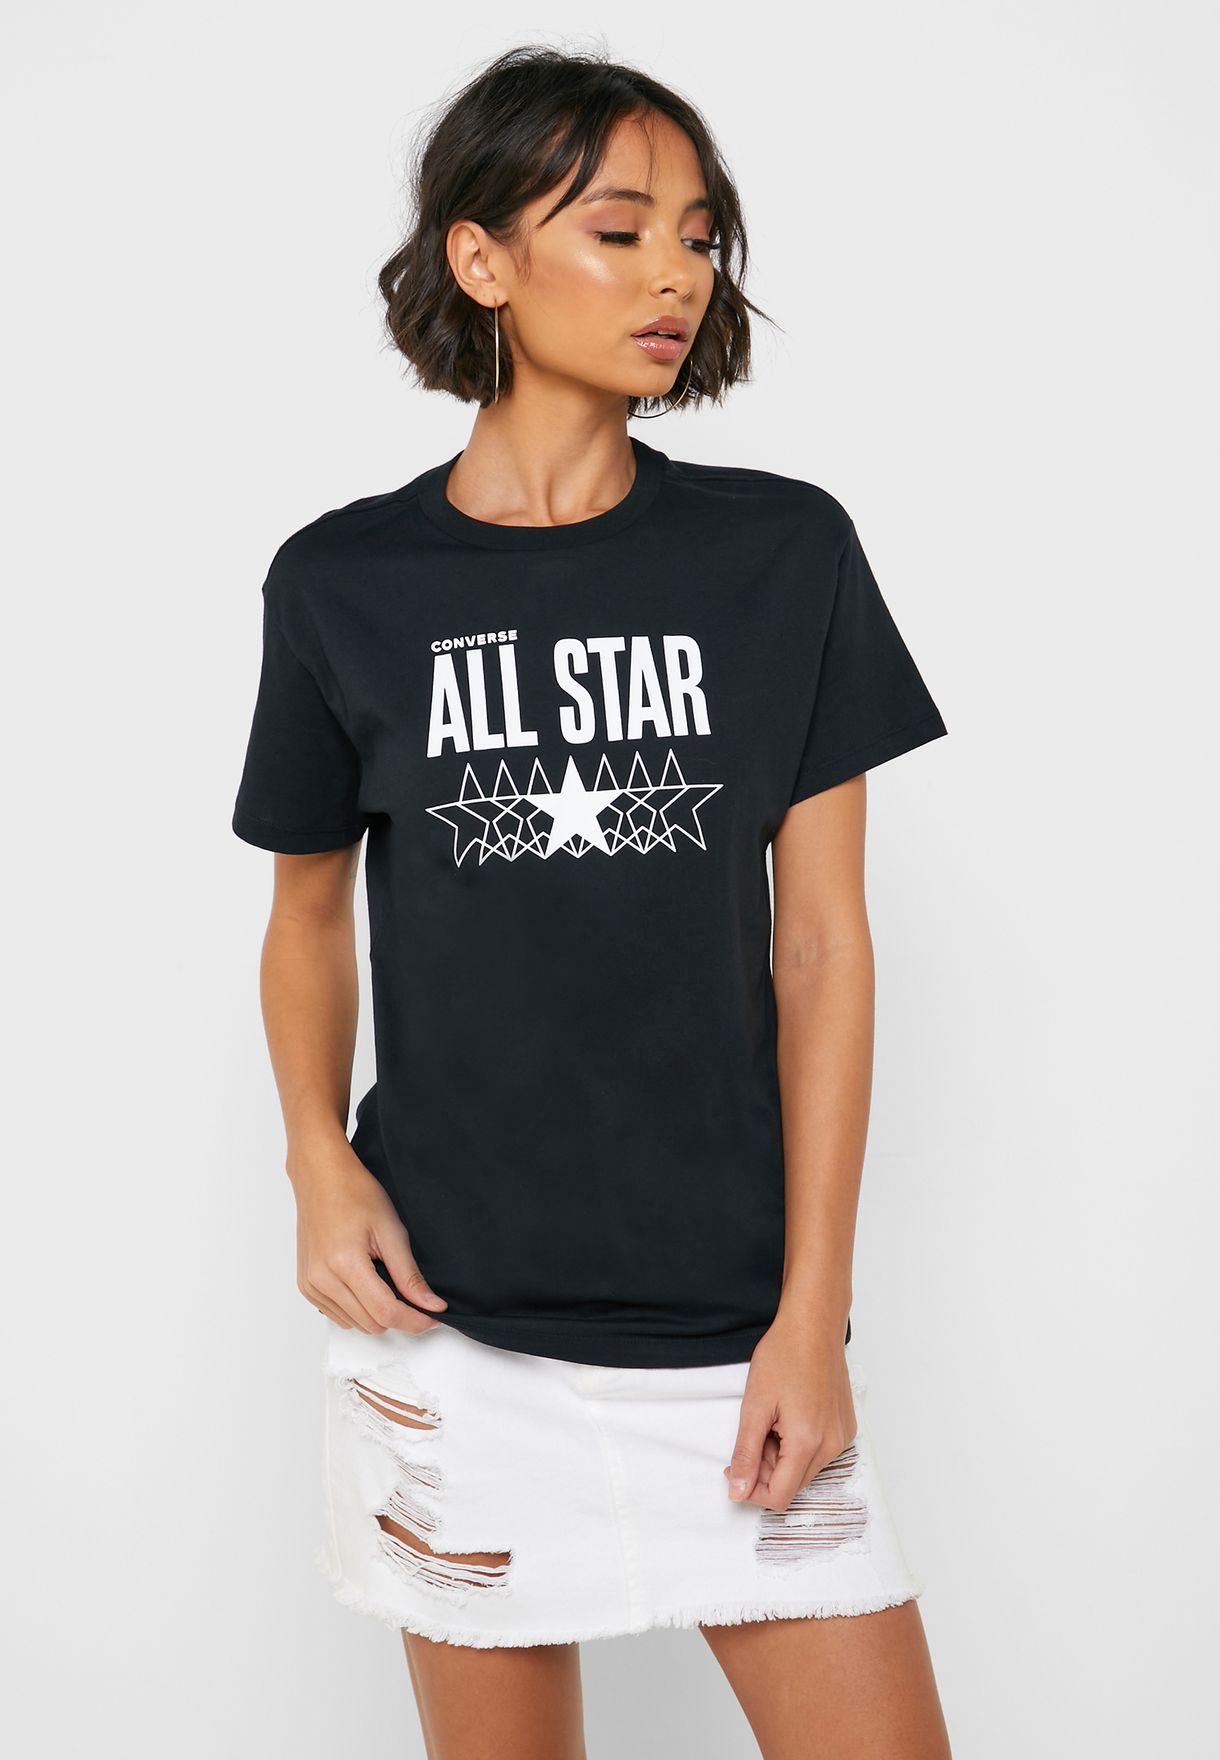 converse all star t shirt women's